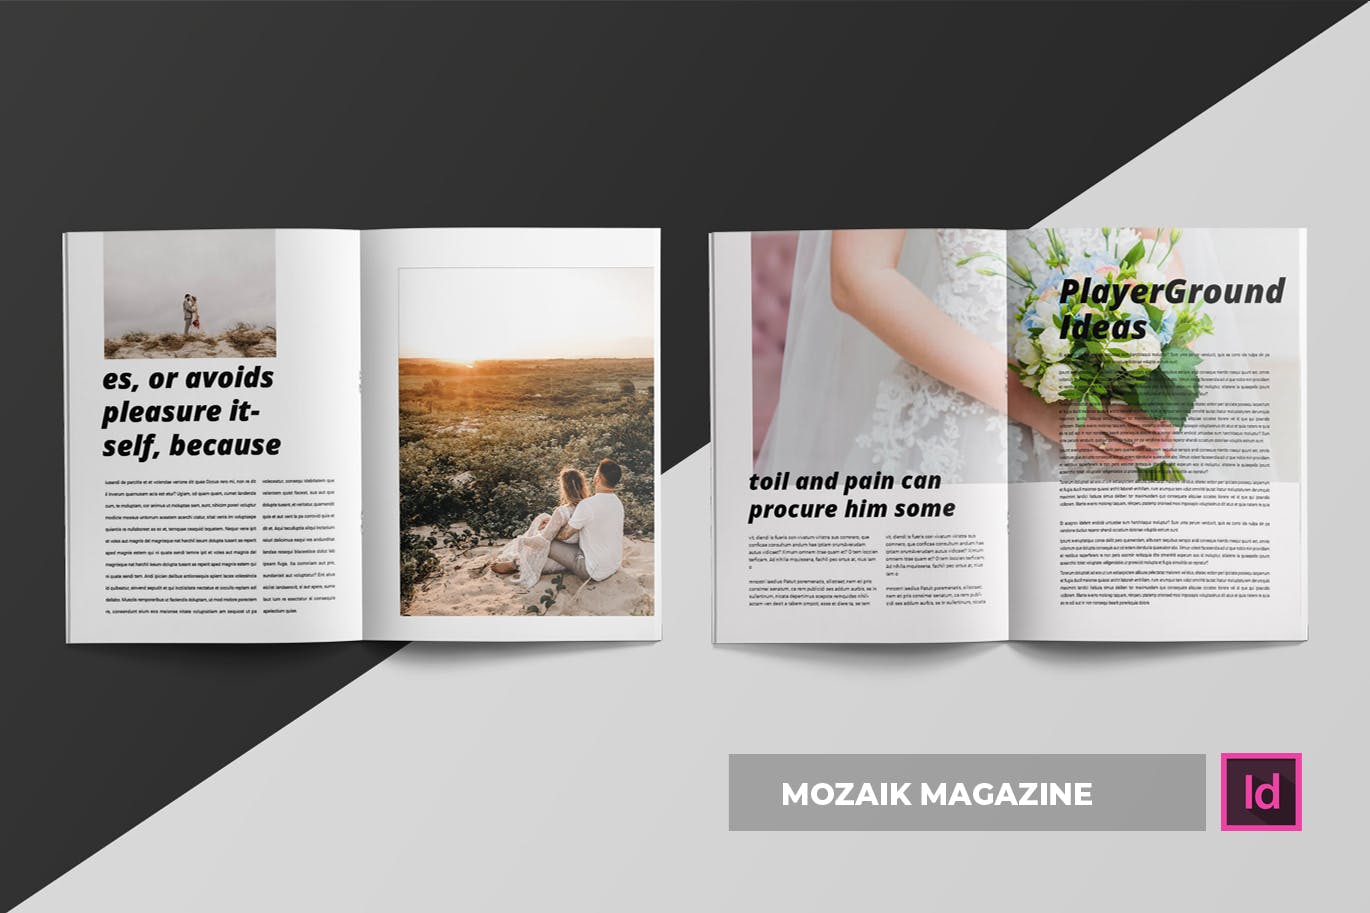 时尚生活主题蚂蚁素材精选杂志排版设计INDD模板 Mozaik | Magazine Template插图(2)